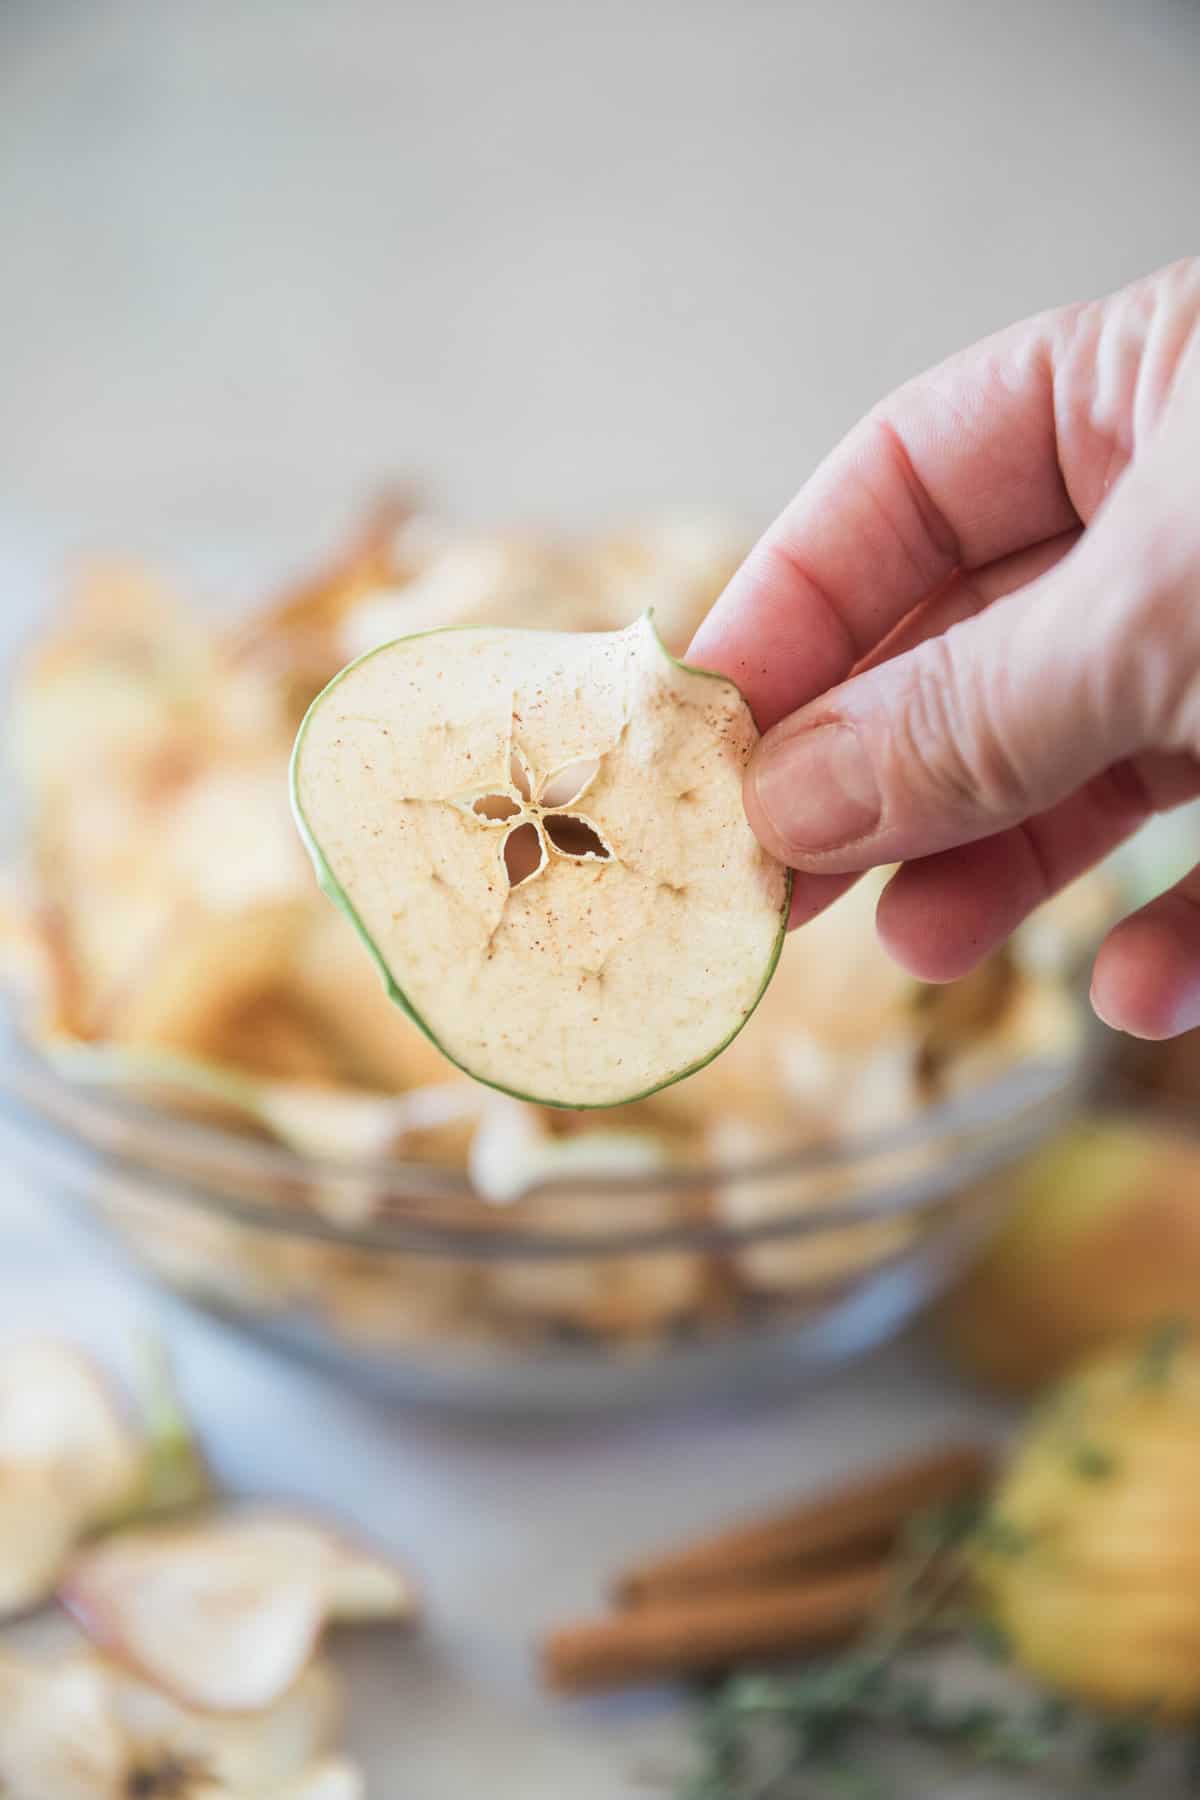 A closeup of an apple chip.